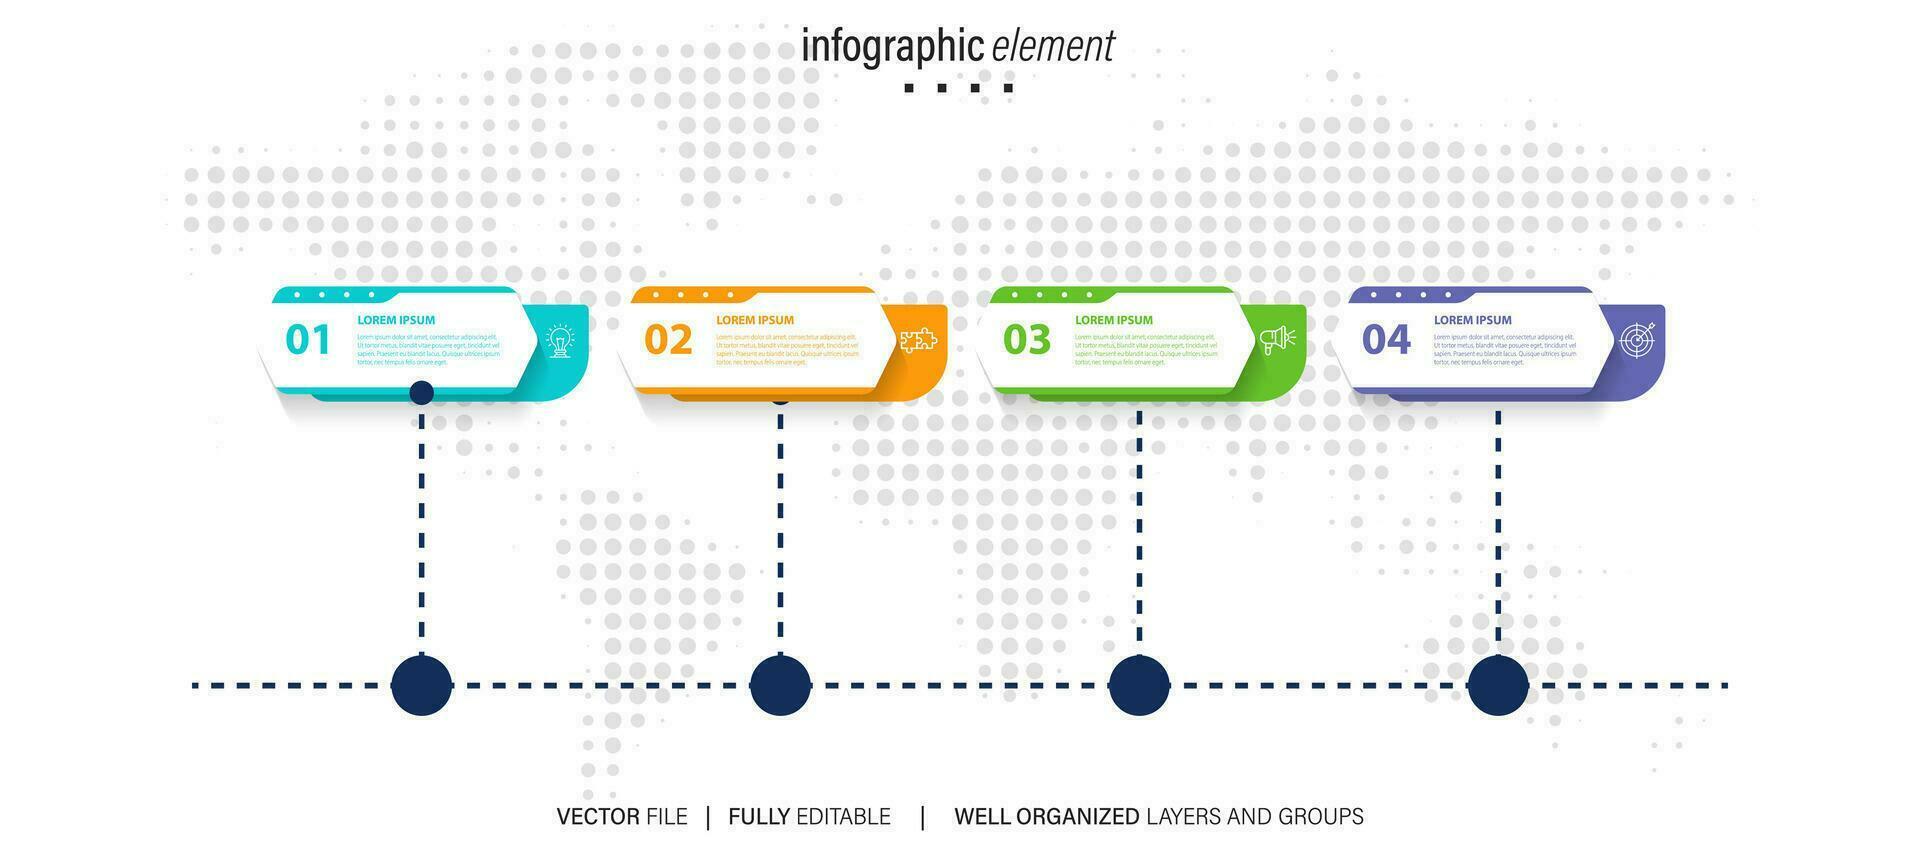 företag data visualisering tidslinje infographic ikoner designad för abstrakt bakgrund mall milstolpe element modern diagram bearbeta teknologi digital marknadsföring data presentation Diagram vektor